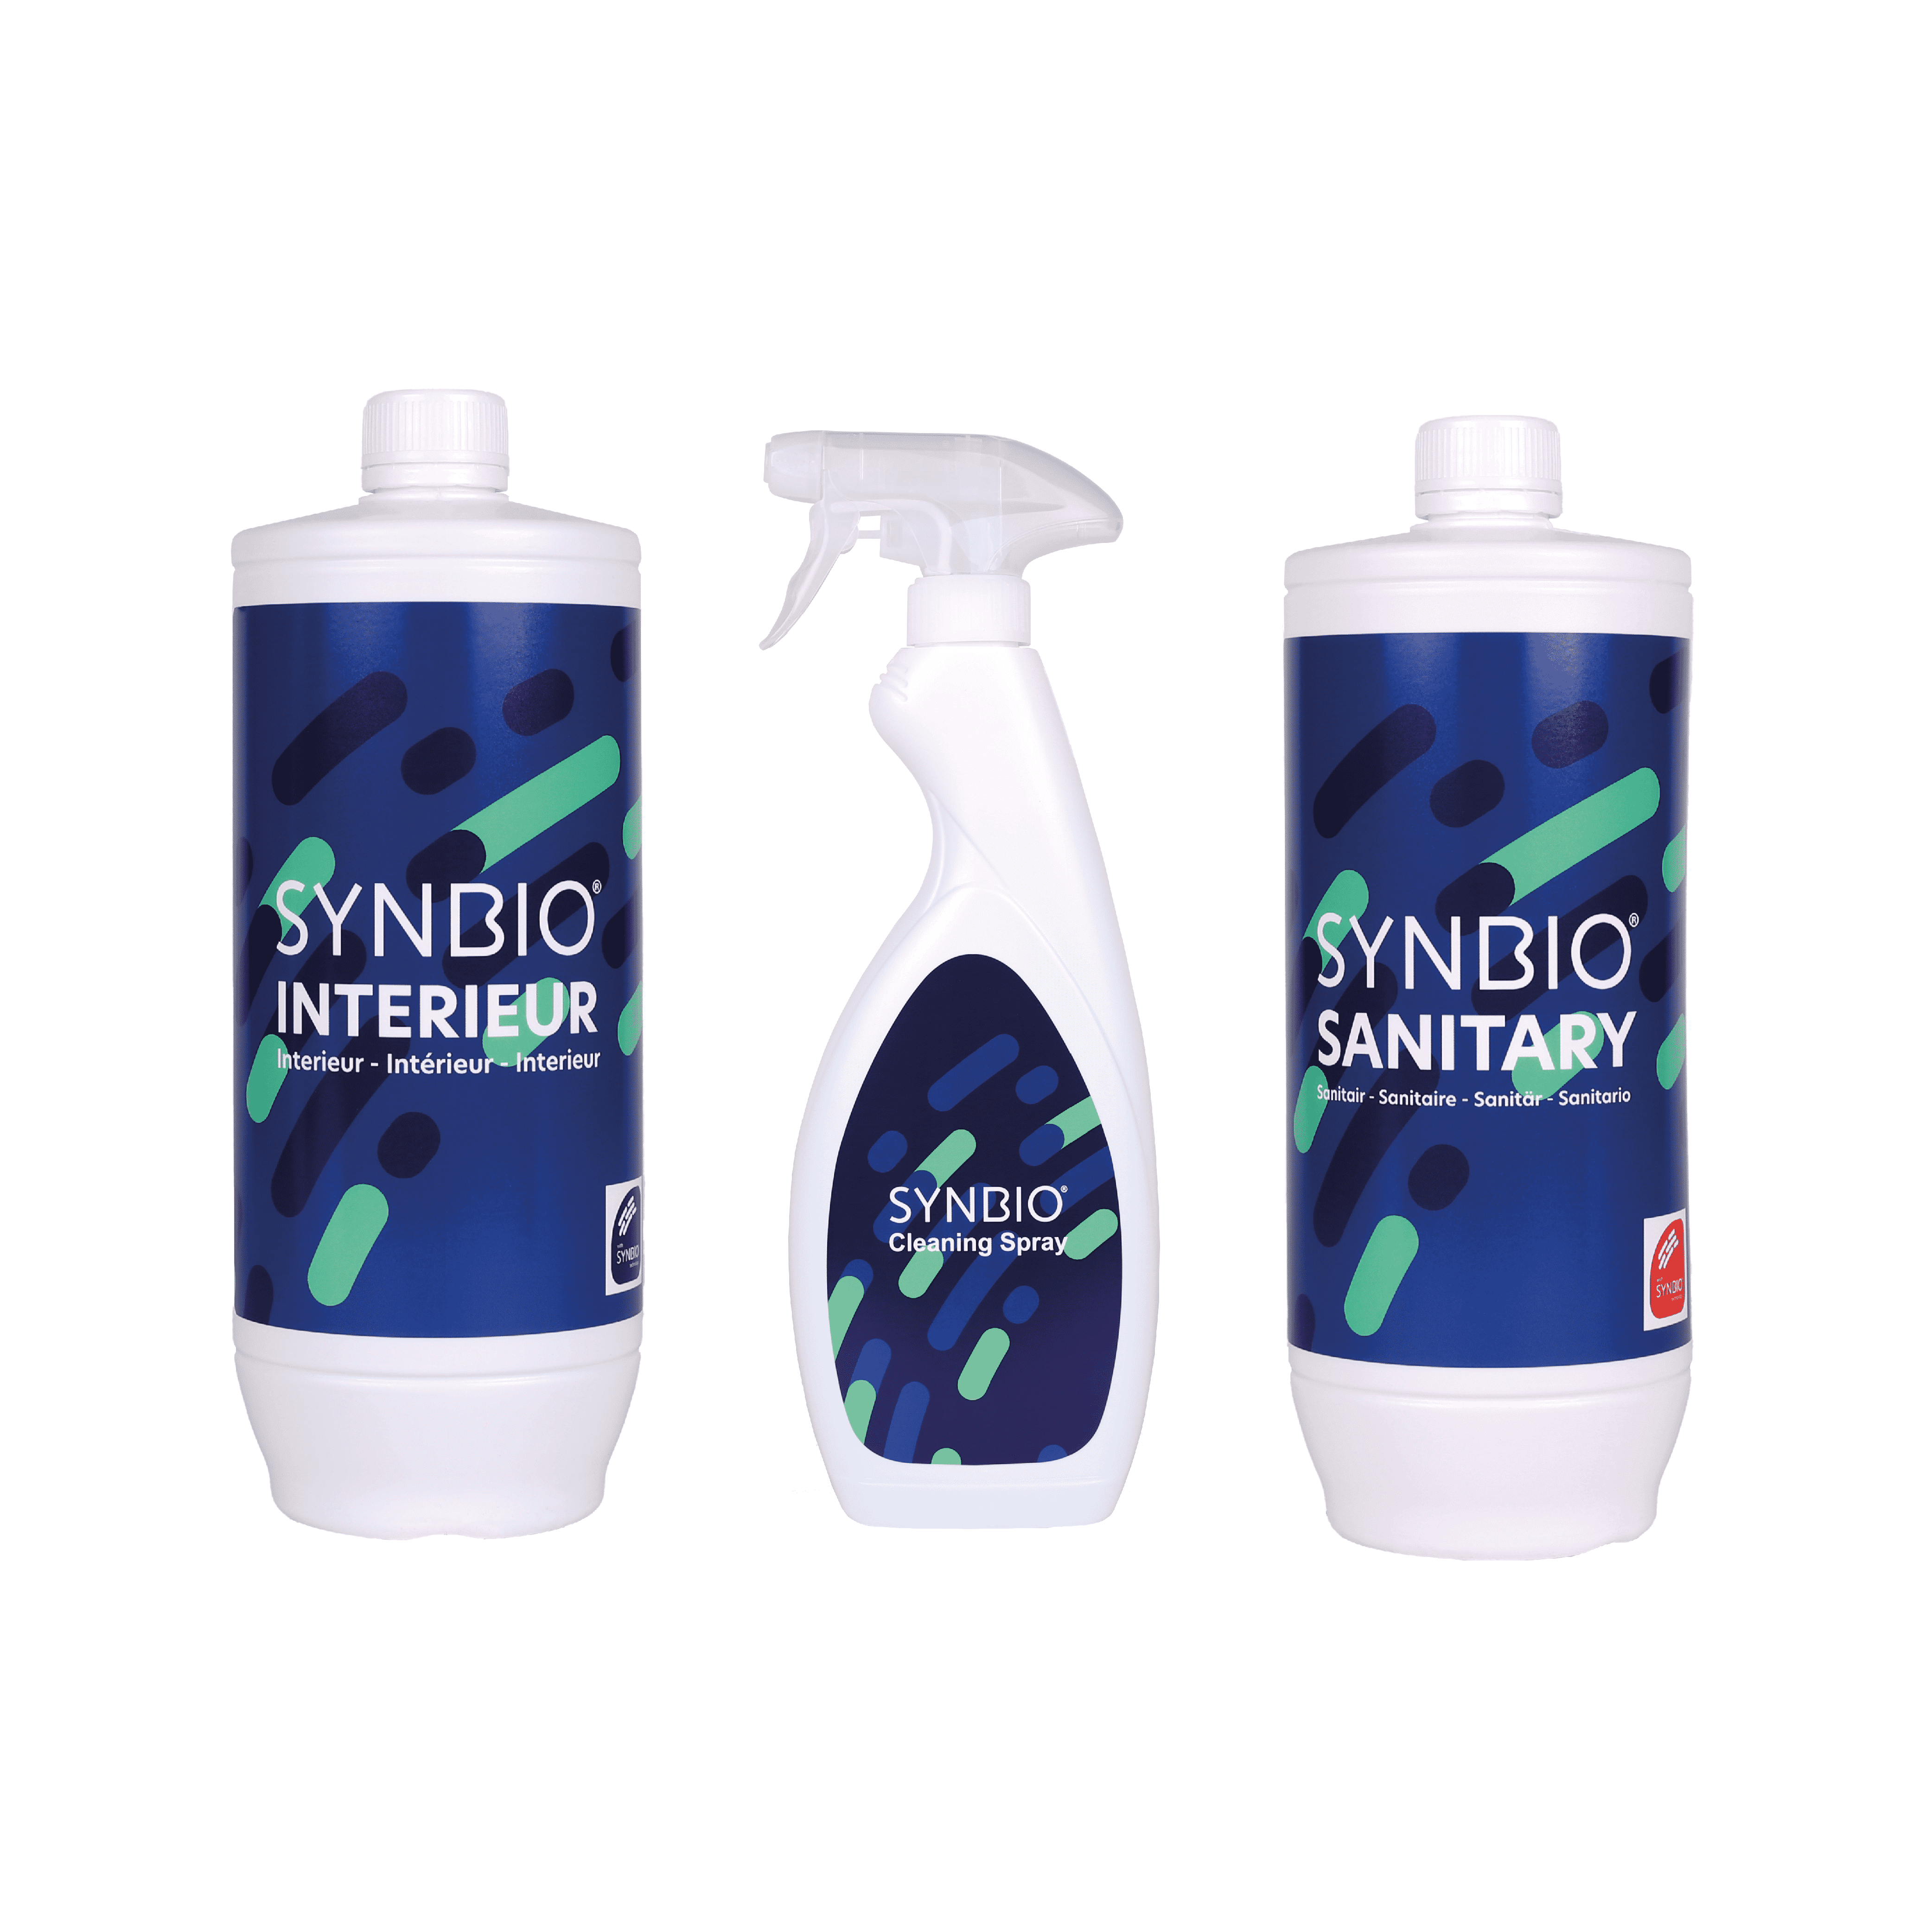 Pro Bio Products - voordeelpakket 3 schoonmaak